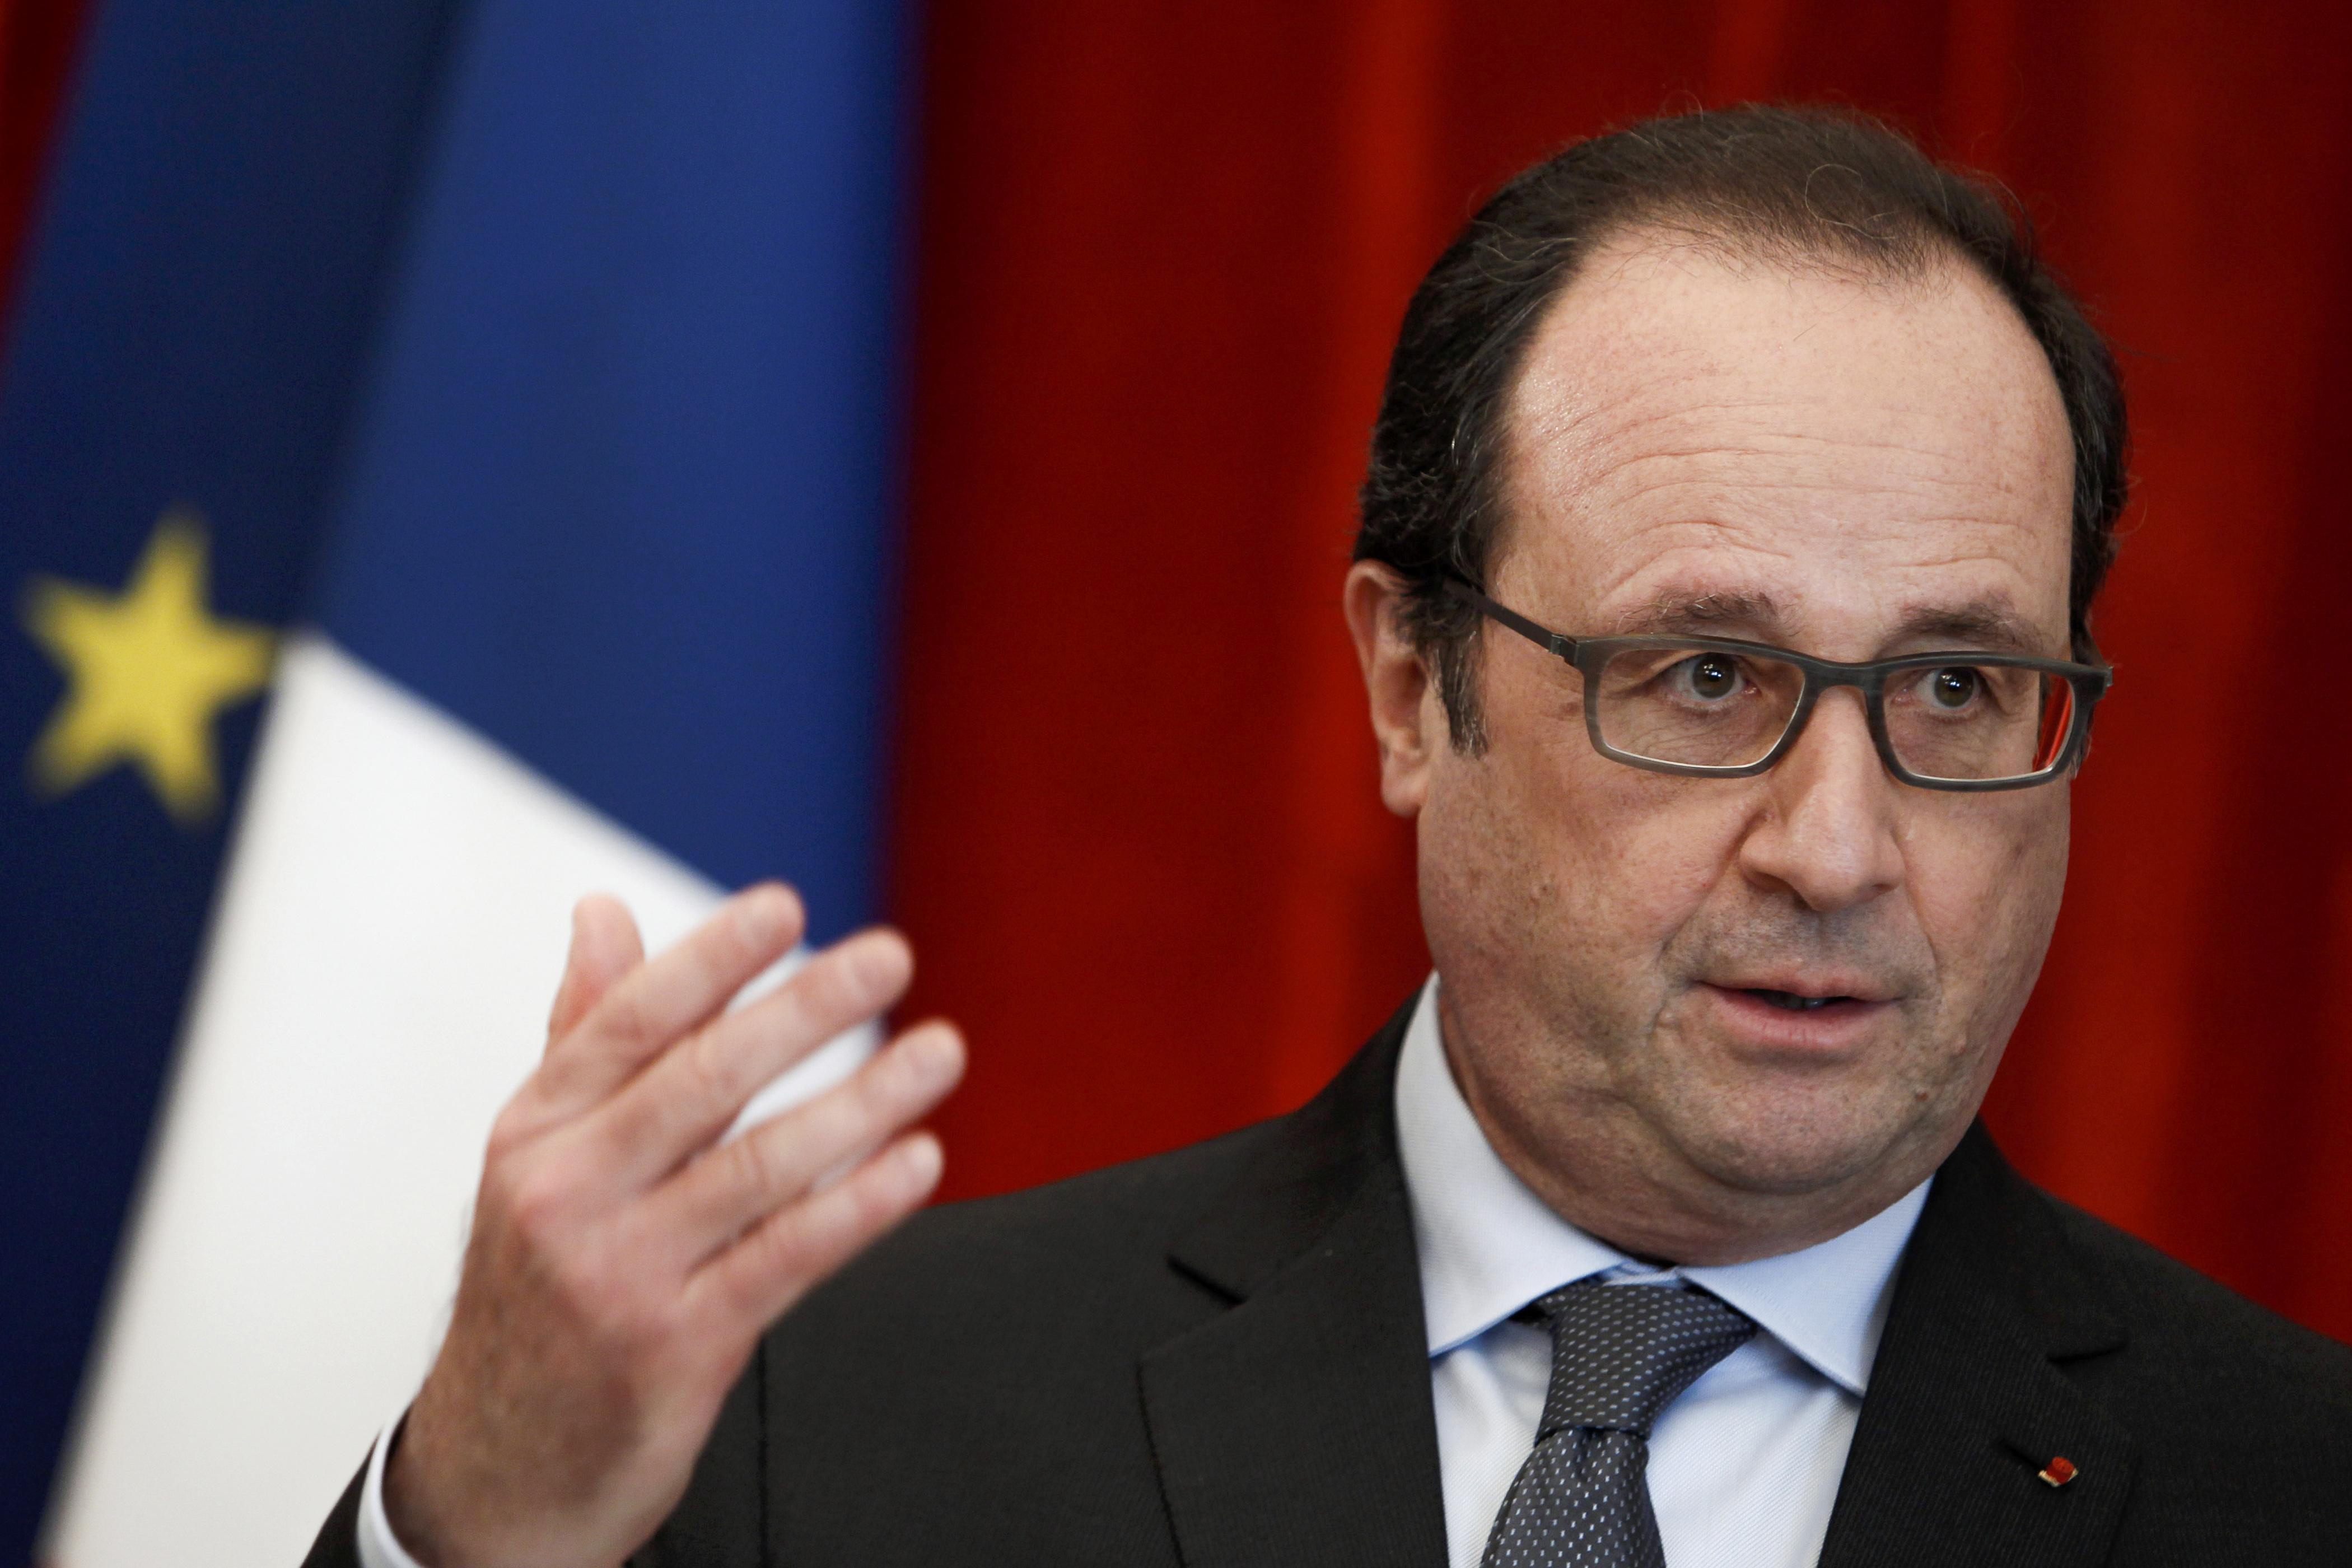 "Las amenazas terroristas no podrán con Francia": Hollande